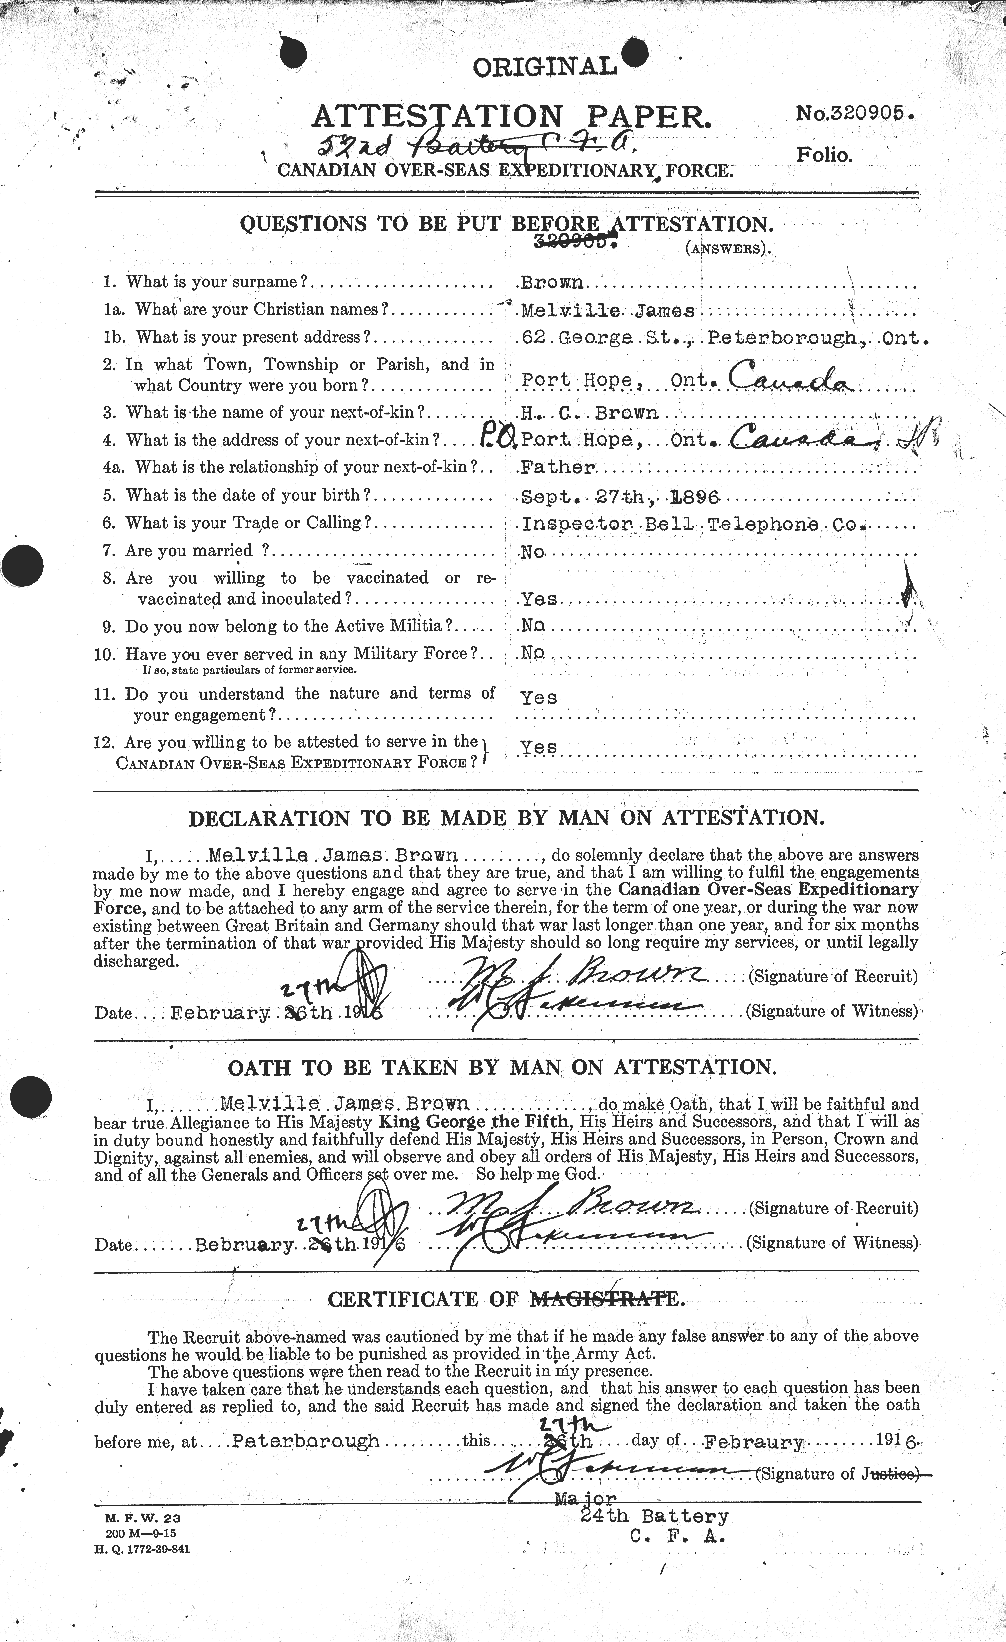 Dossiers du Personnel de la Première Guerre mondiale - CEC 267053a